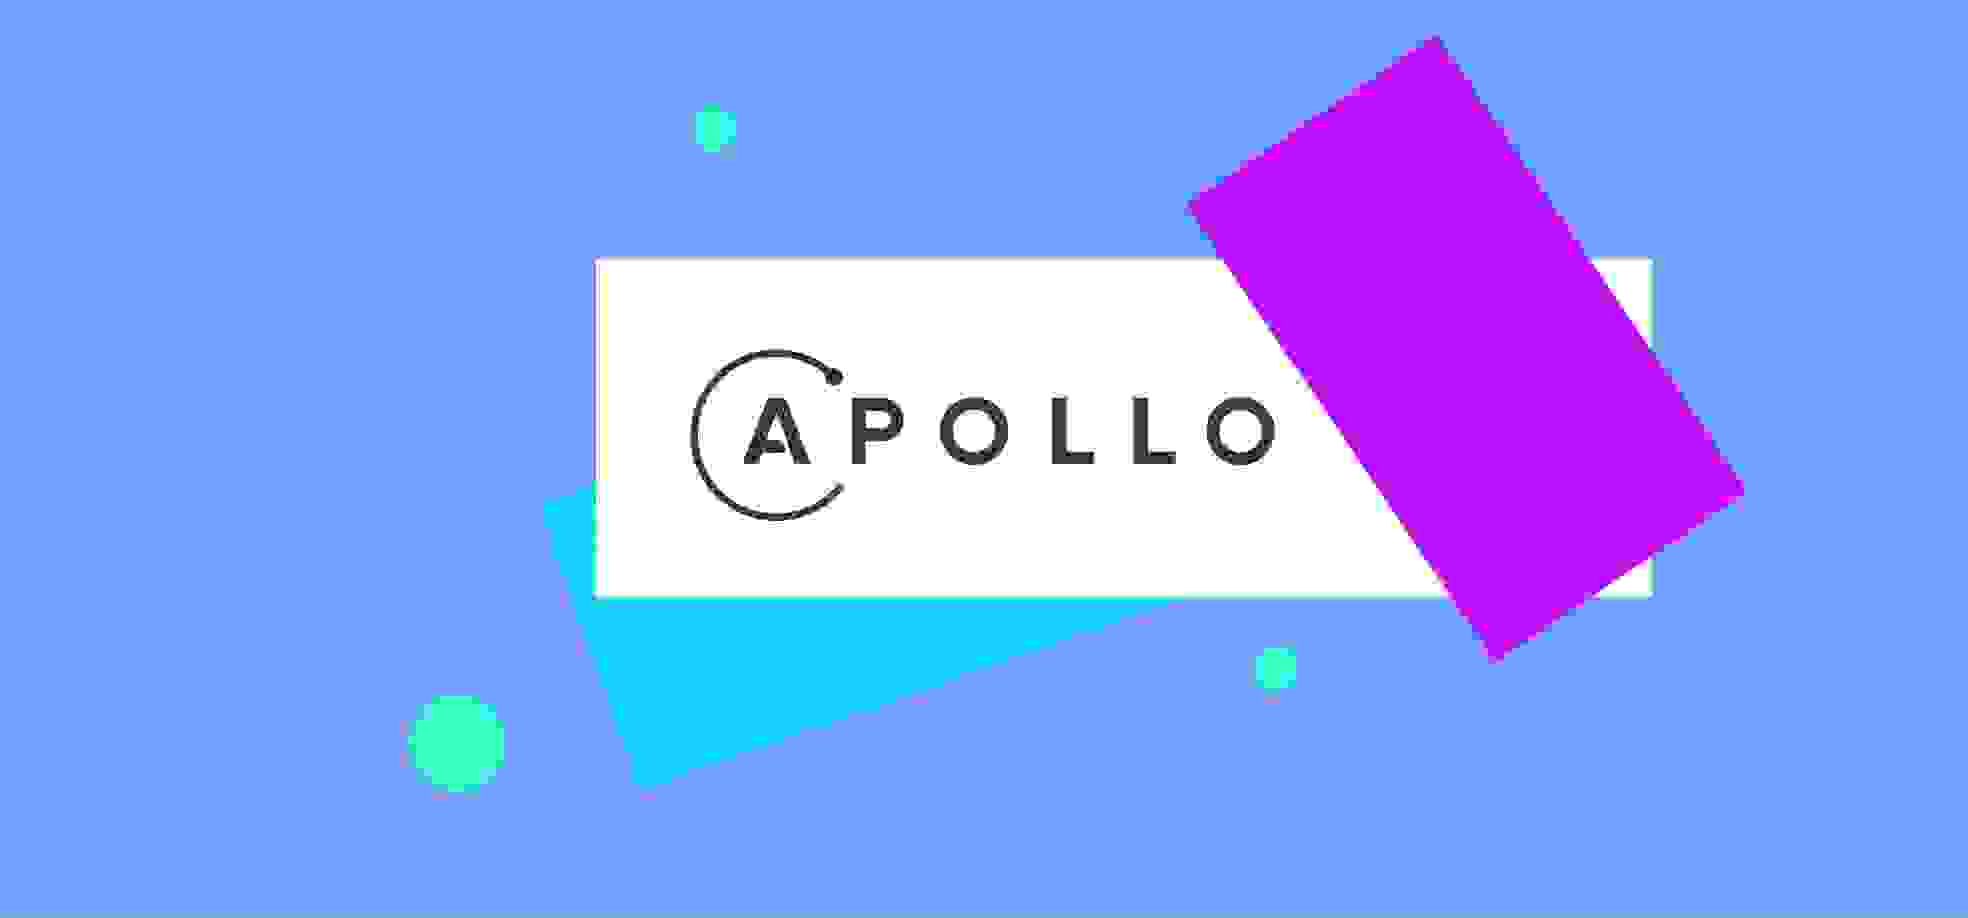 Apollo logo on a blue background